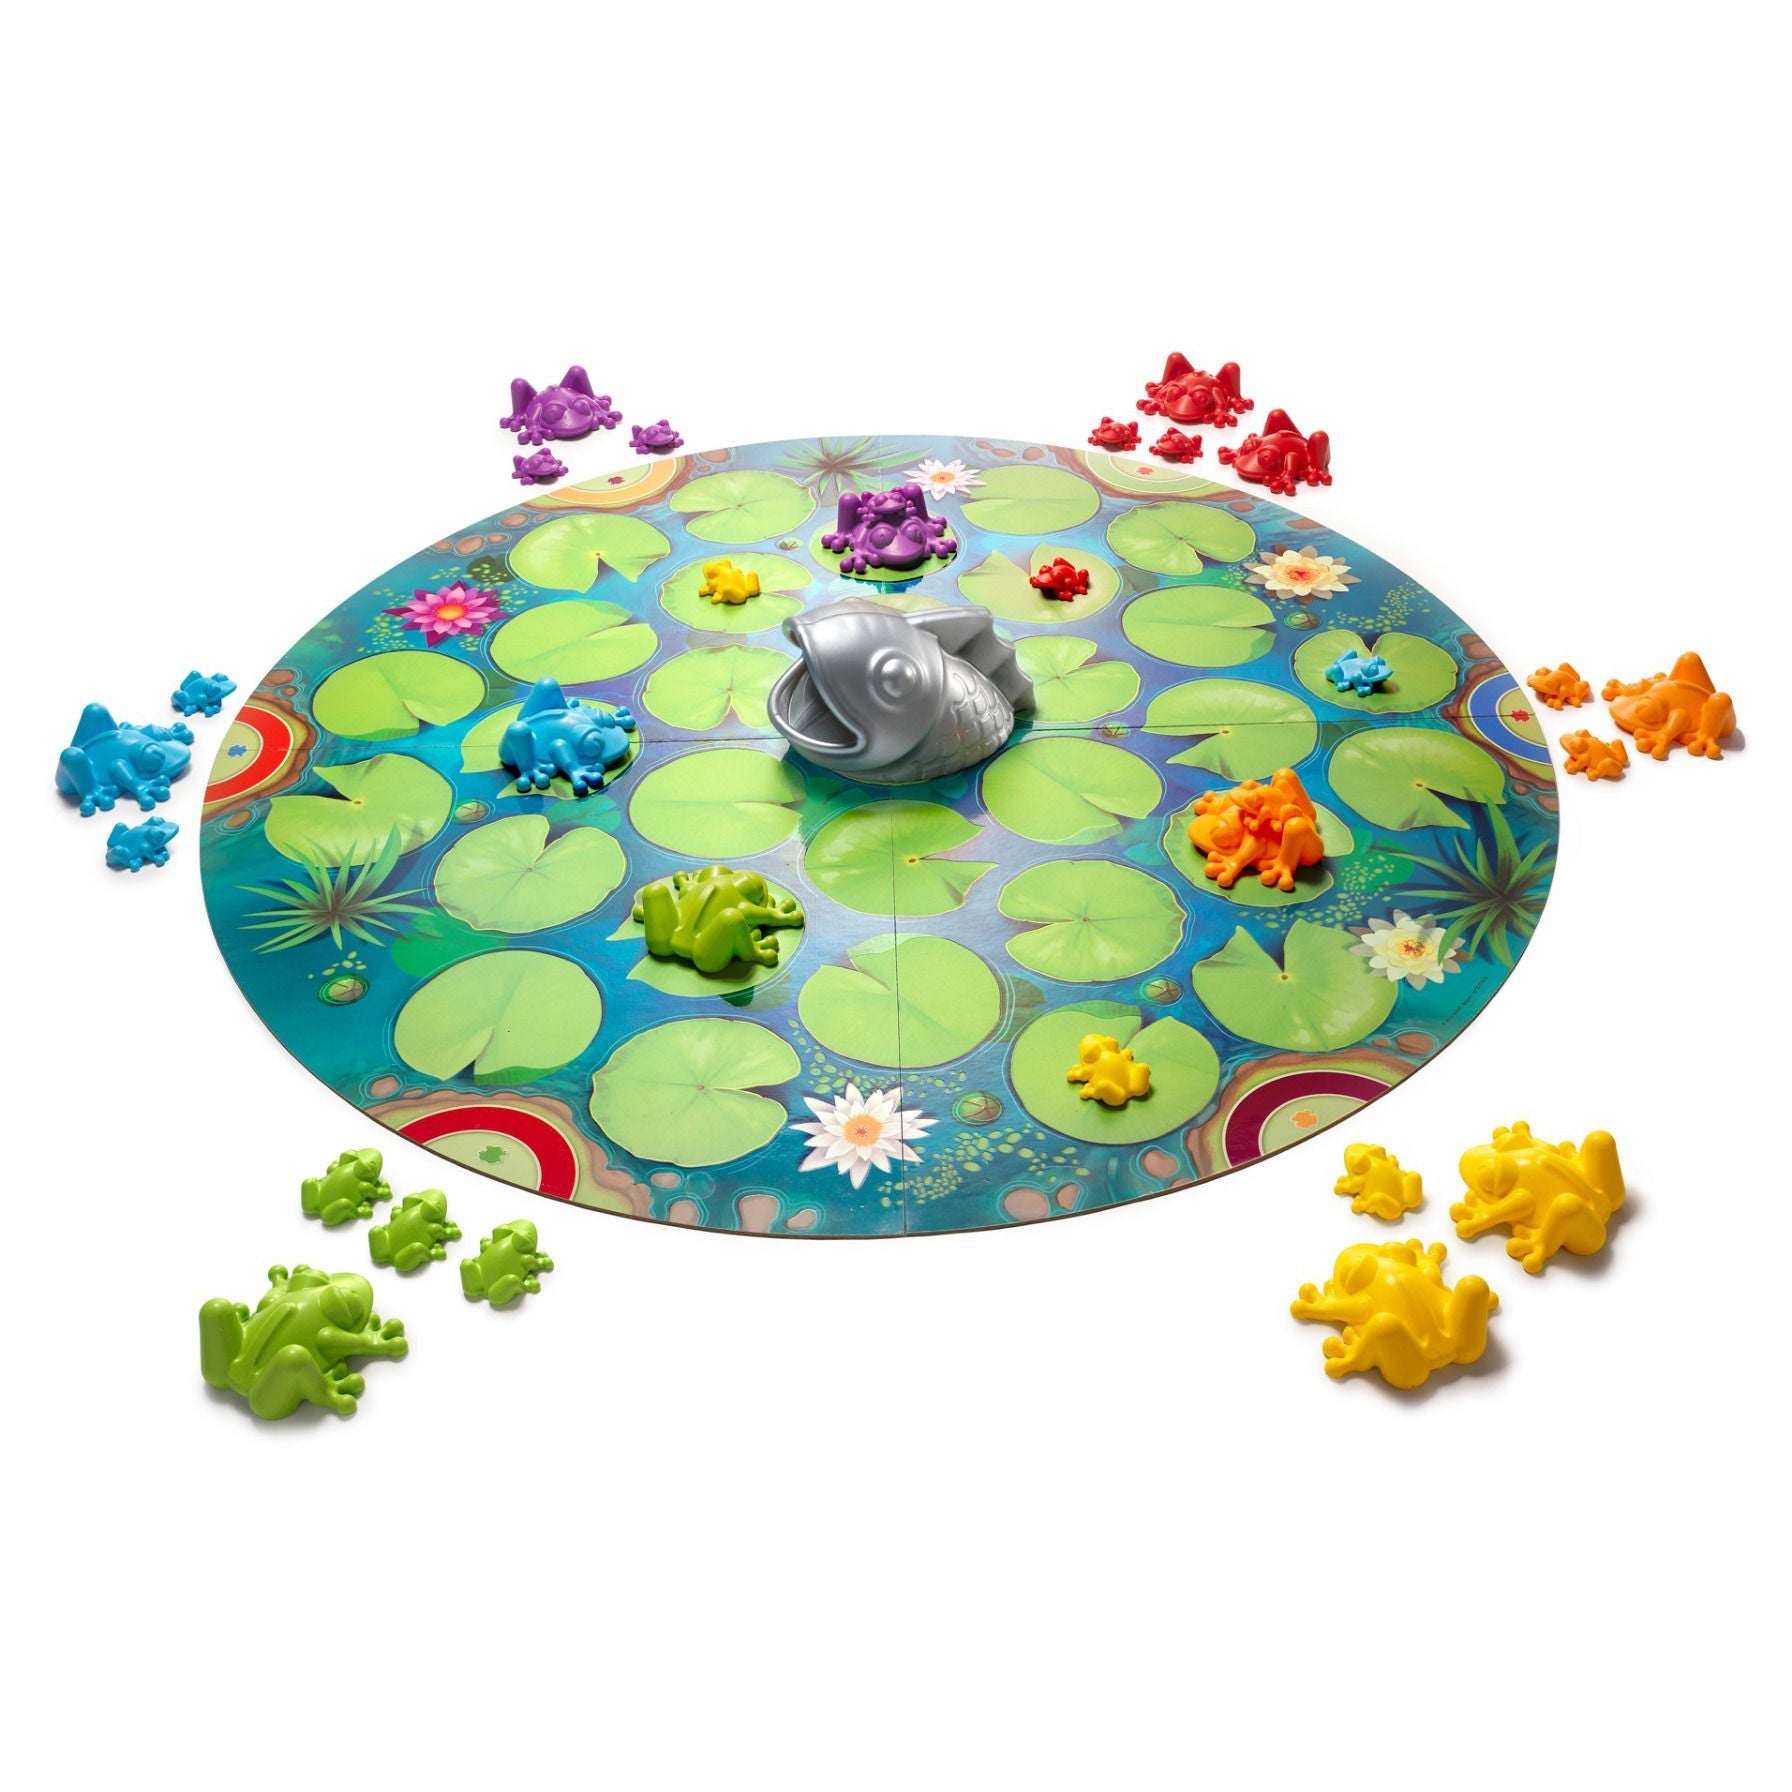 Smart Games Froggit-SMART GAMES-Little Giant Kidz